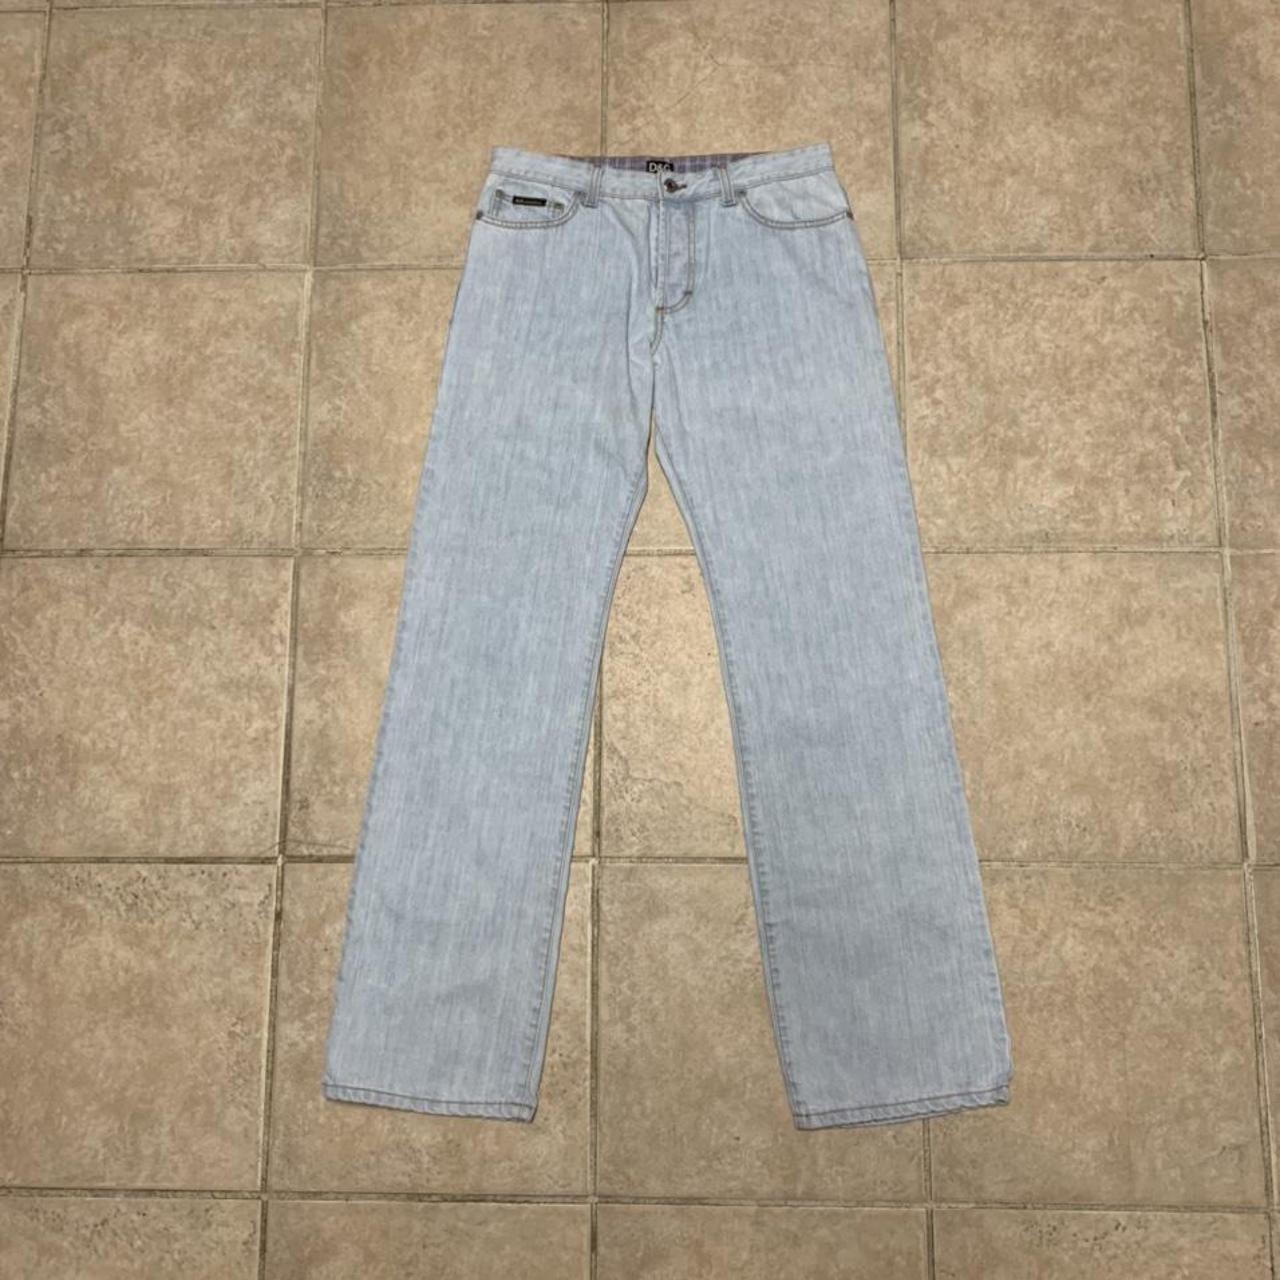 Vintage Dolce and Gabana jeans Size30 No flaws... - Depop